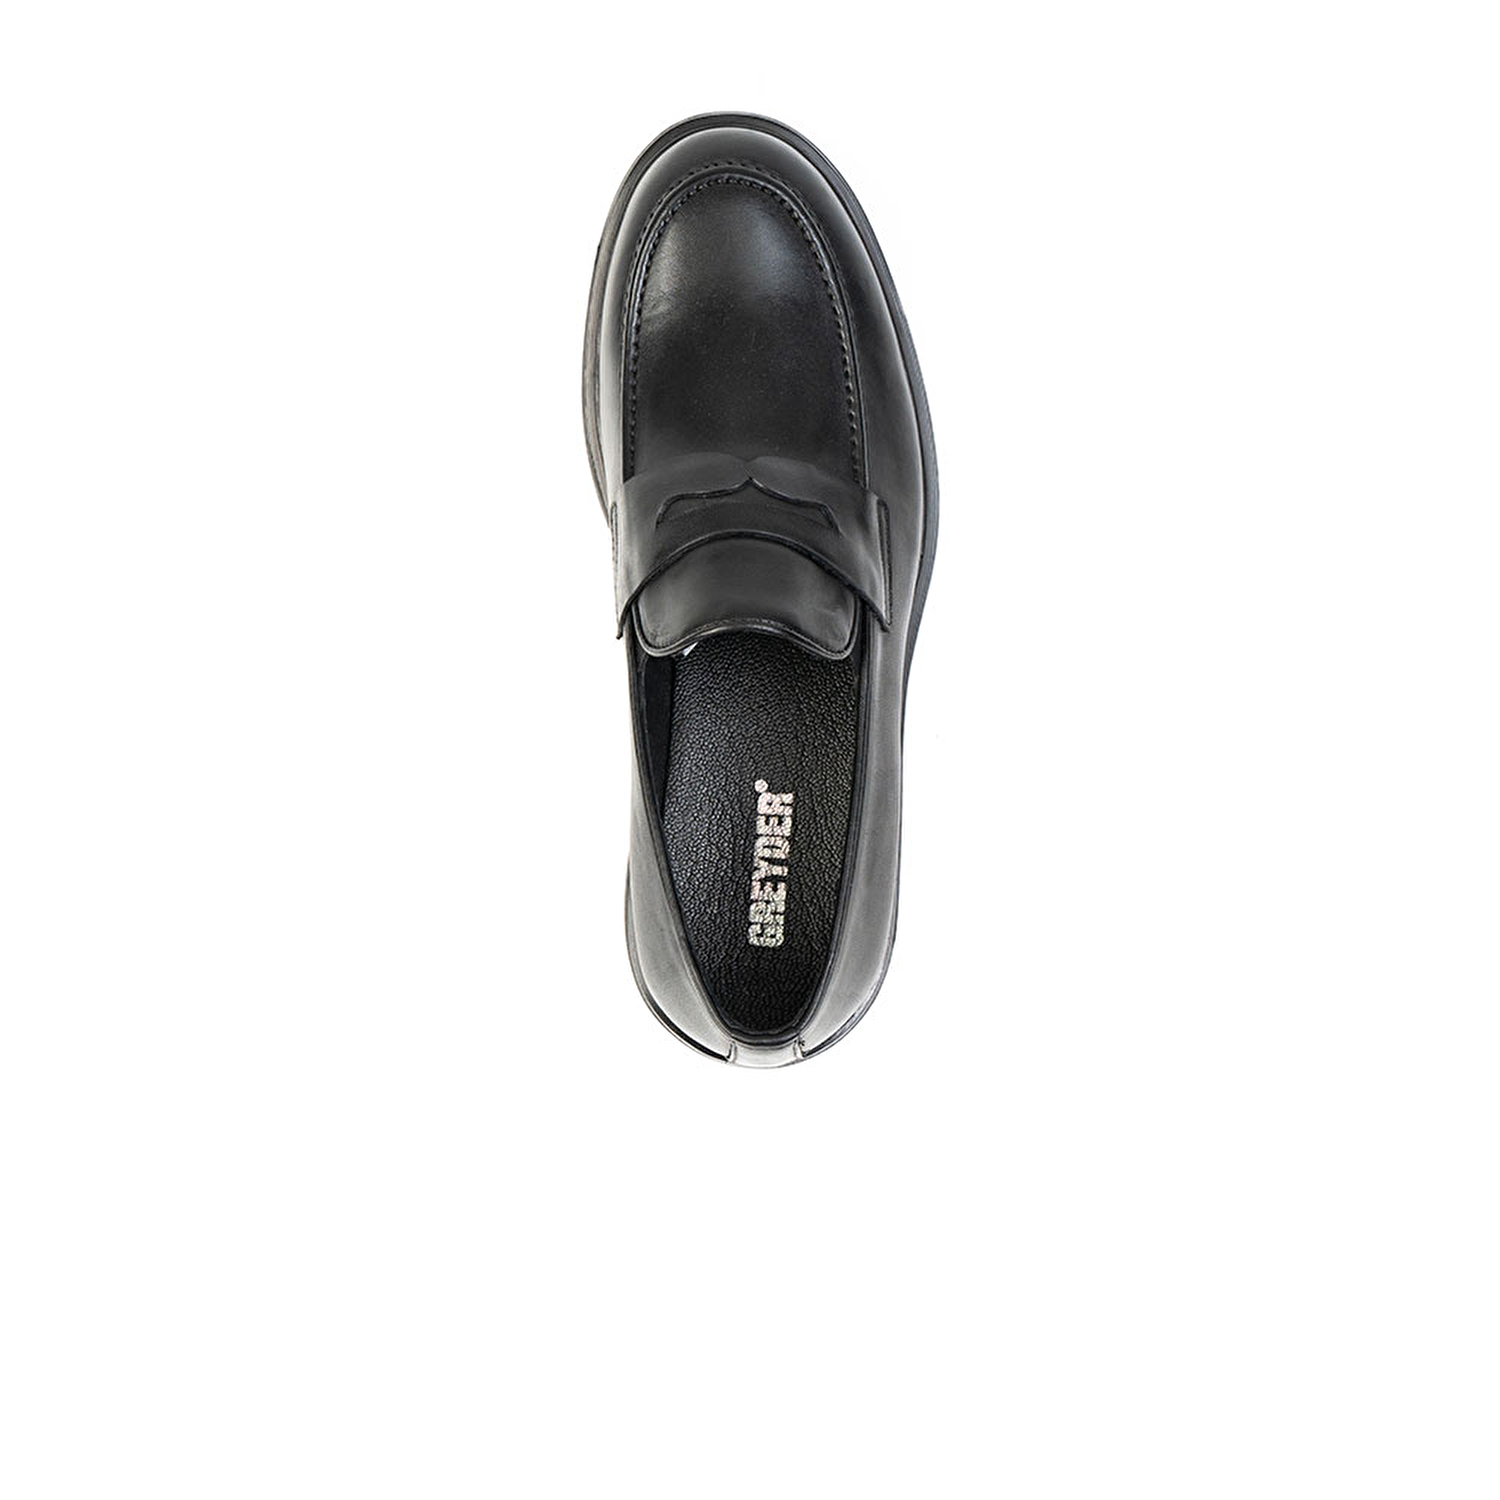 Klasik Erkek Ayakkabı Siyah Deri 67797-5